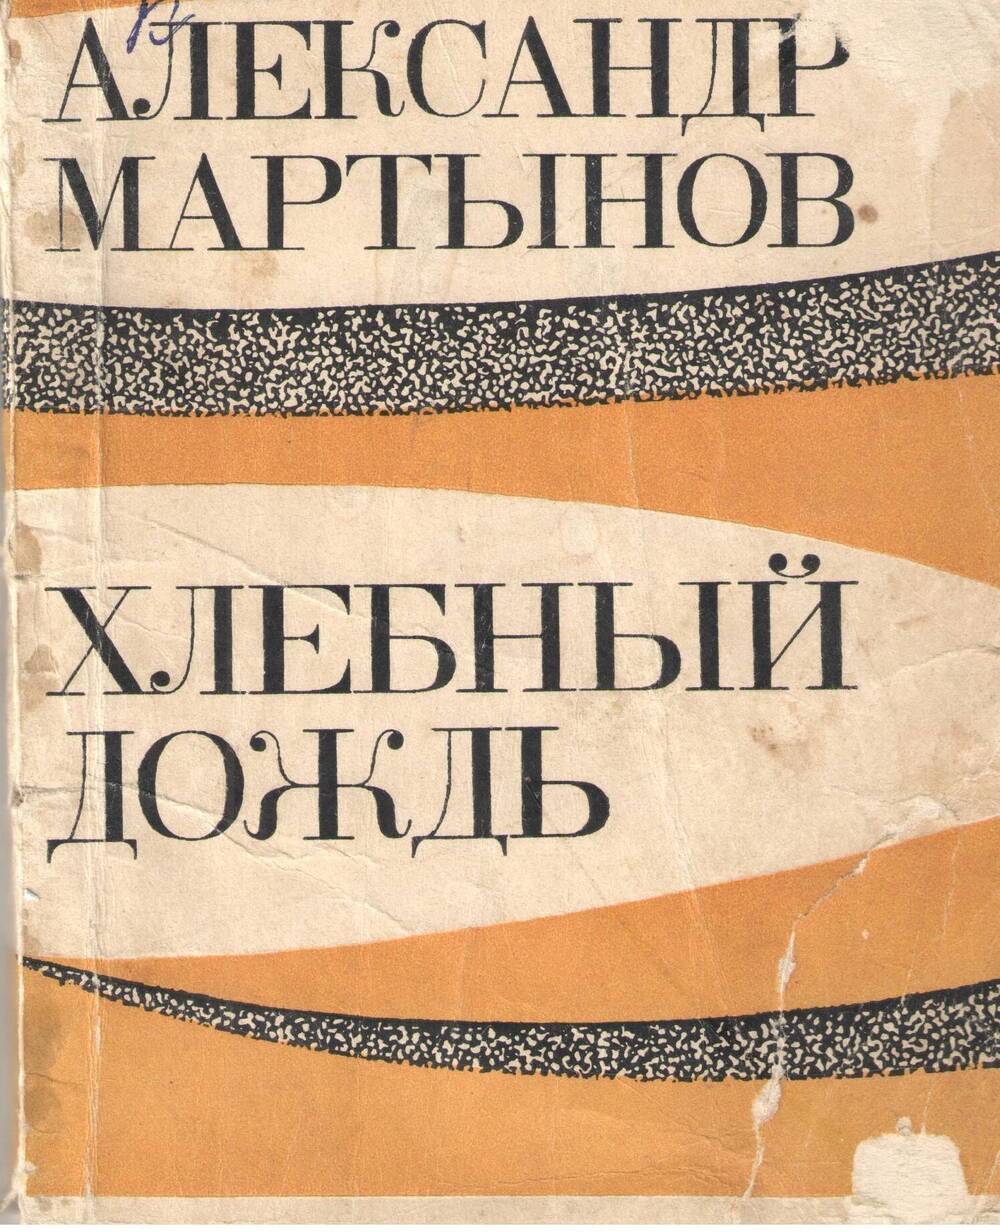 Книга Александра Мартынова Хлебный дождь.